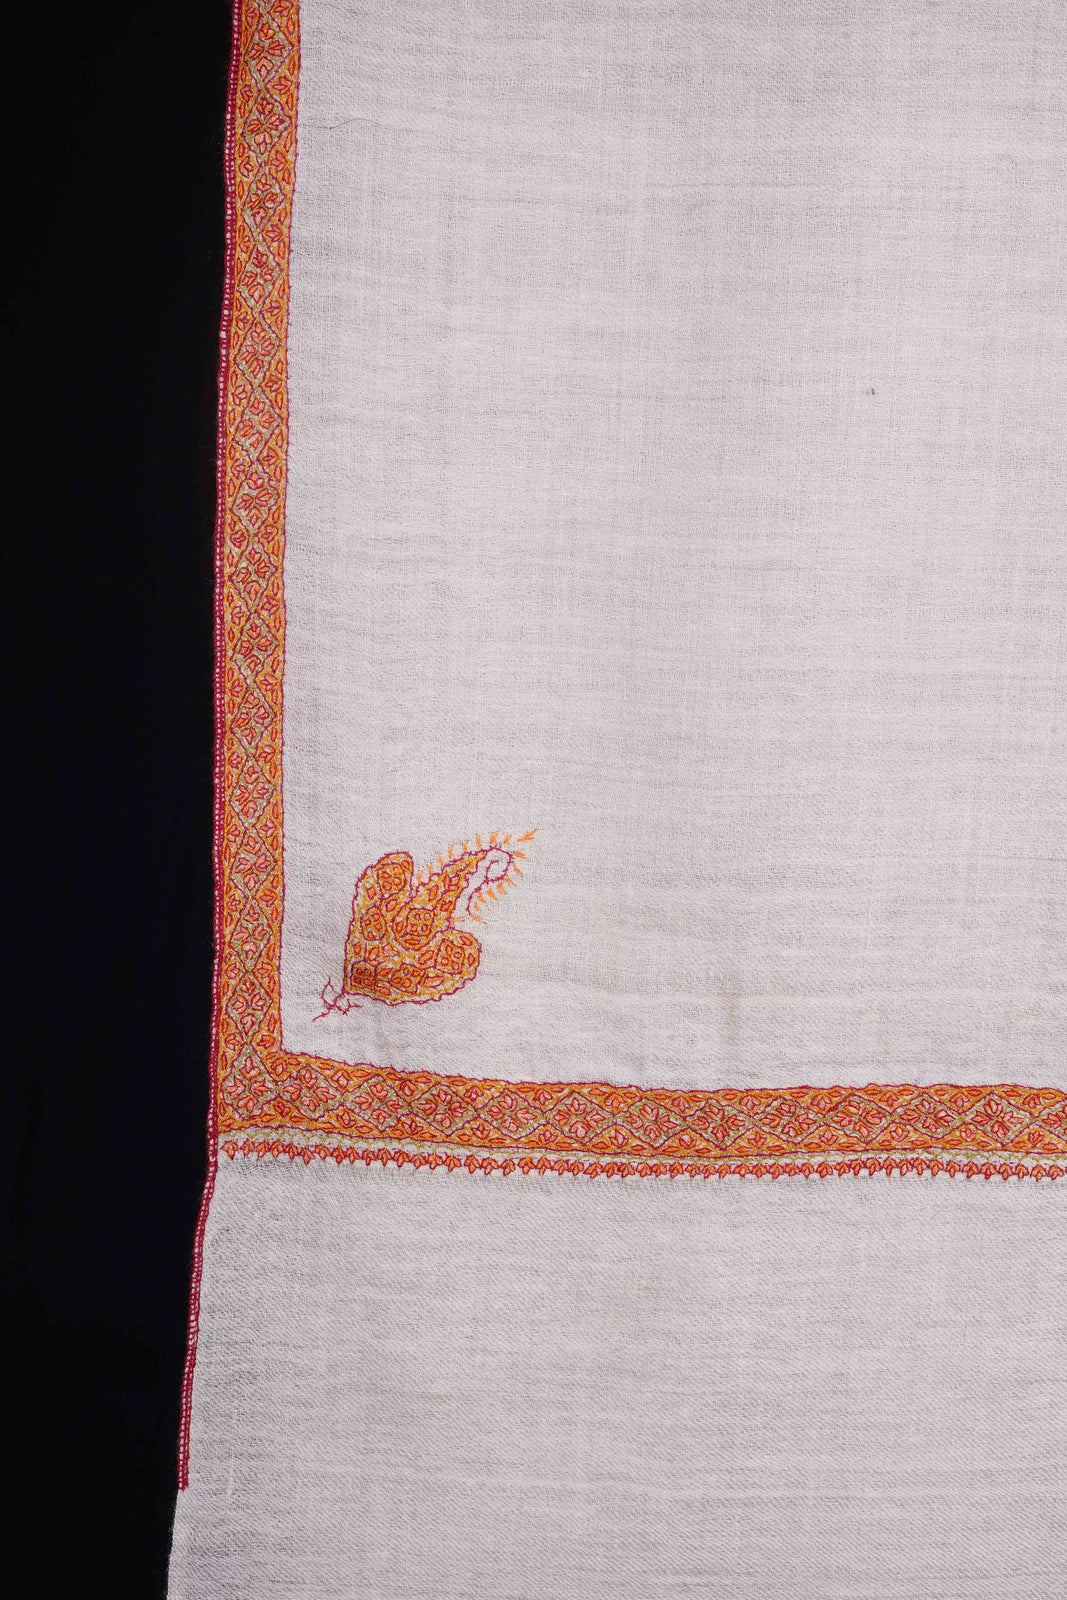 Ivory Base with Orange Border Embroidery Cashmere Pashmina Scarf